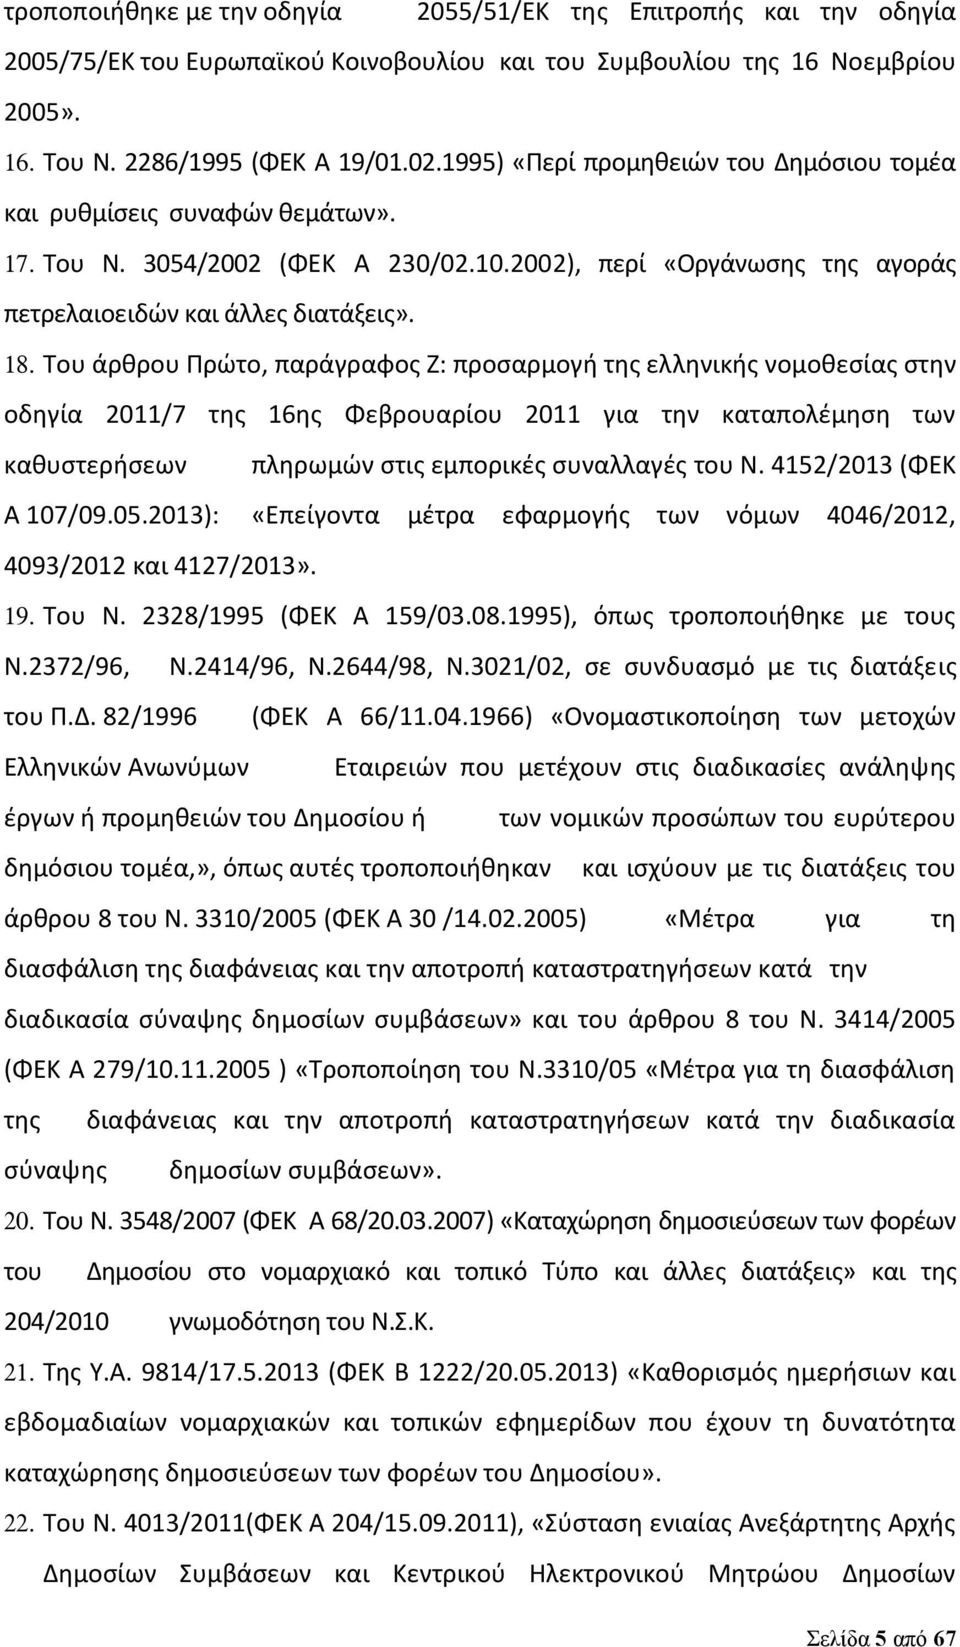 Του άρθρου Πρώτο, παράγραφος Ζ: προσαρμογή της ελληνικής νομοθεσίας στην οδηγία 2011/7 της 16ης Φεβρουαρίου 2011 για την καταπολέμηση των καθυστερήσεων πληρωμών στις εμπορικές συναλλαγές του Ν.